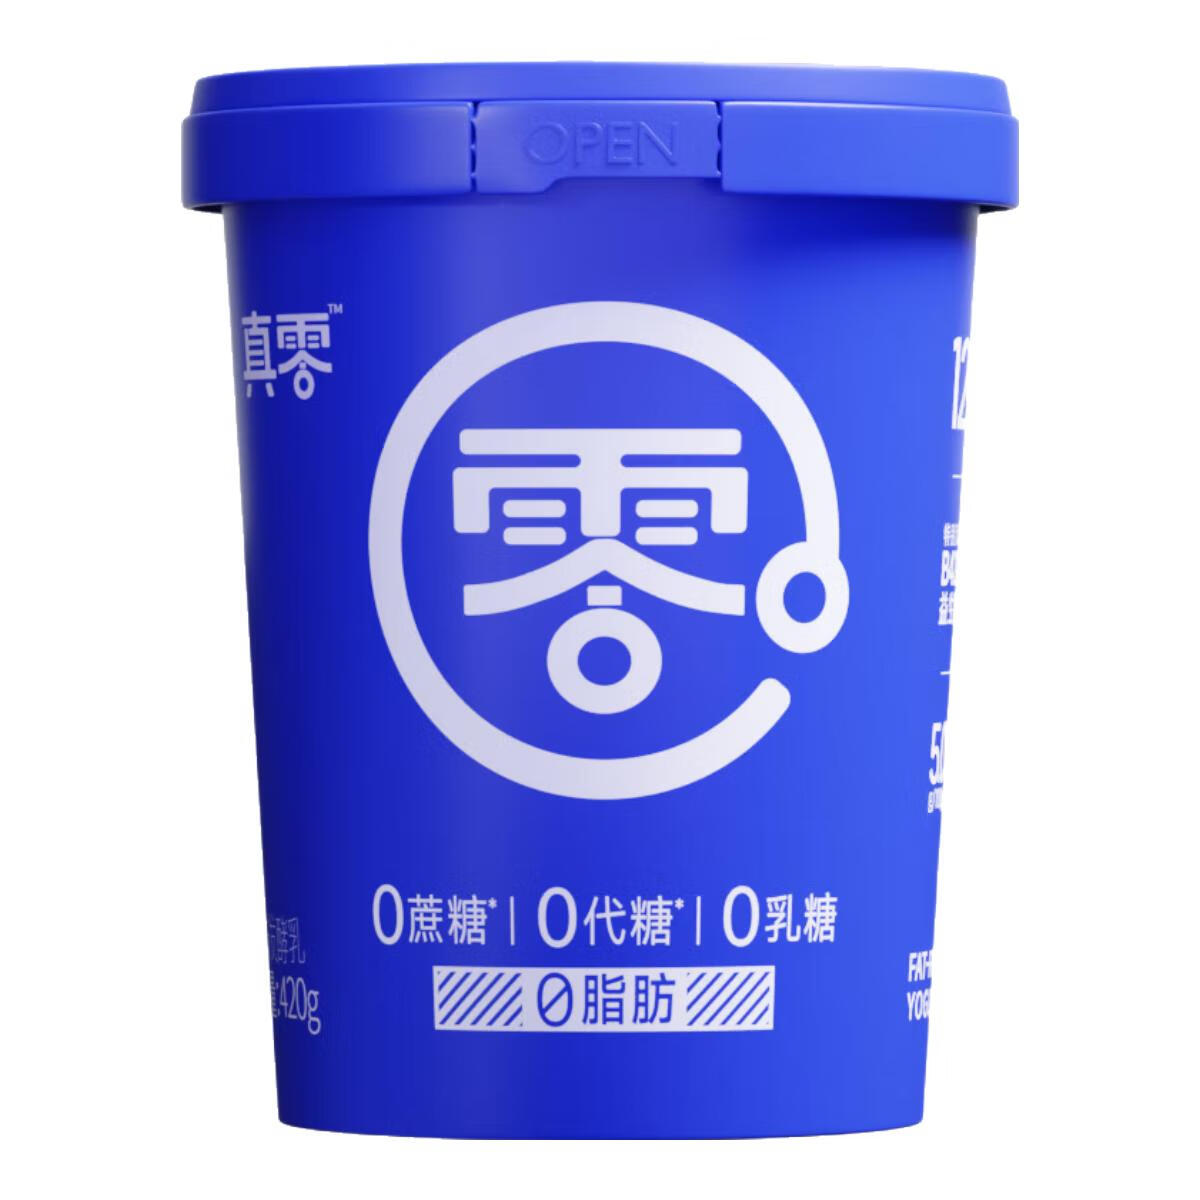 14日0点截止：真零 小蓝罐酸奶 20g*4罐 64.9元